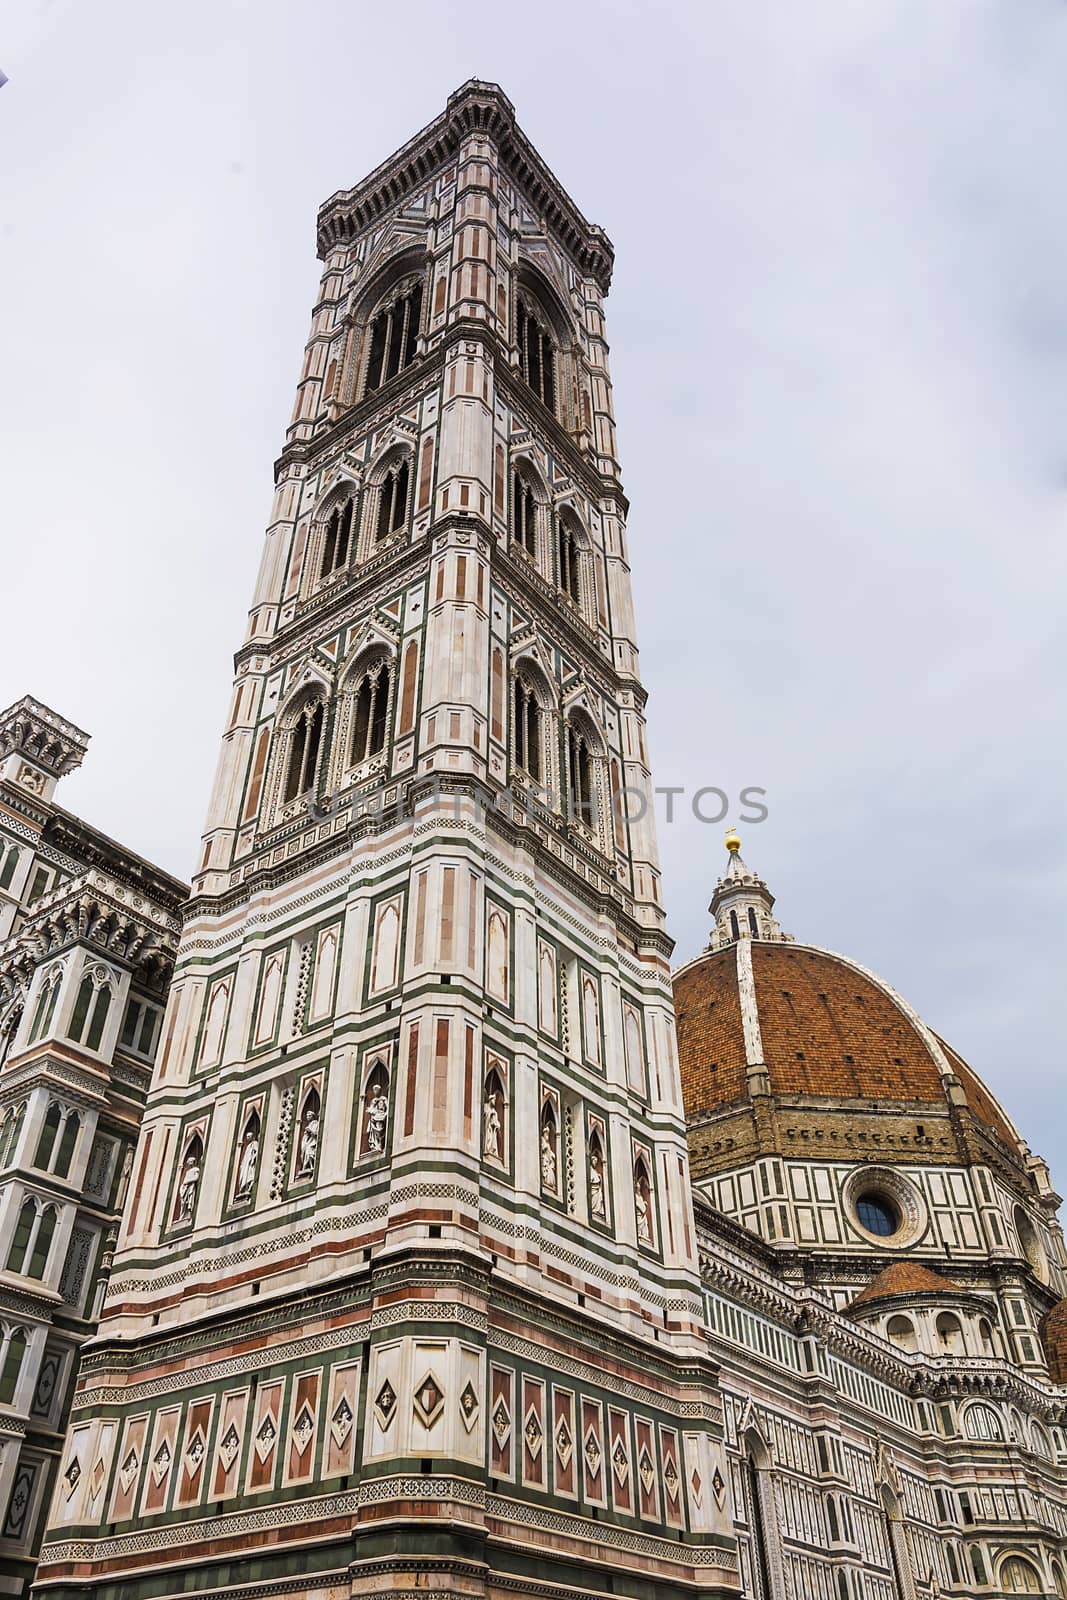 Duomo Santa Maria Del Fiore and Campanile. Florence, Italy by rarrarorro